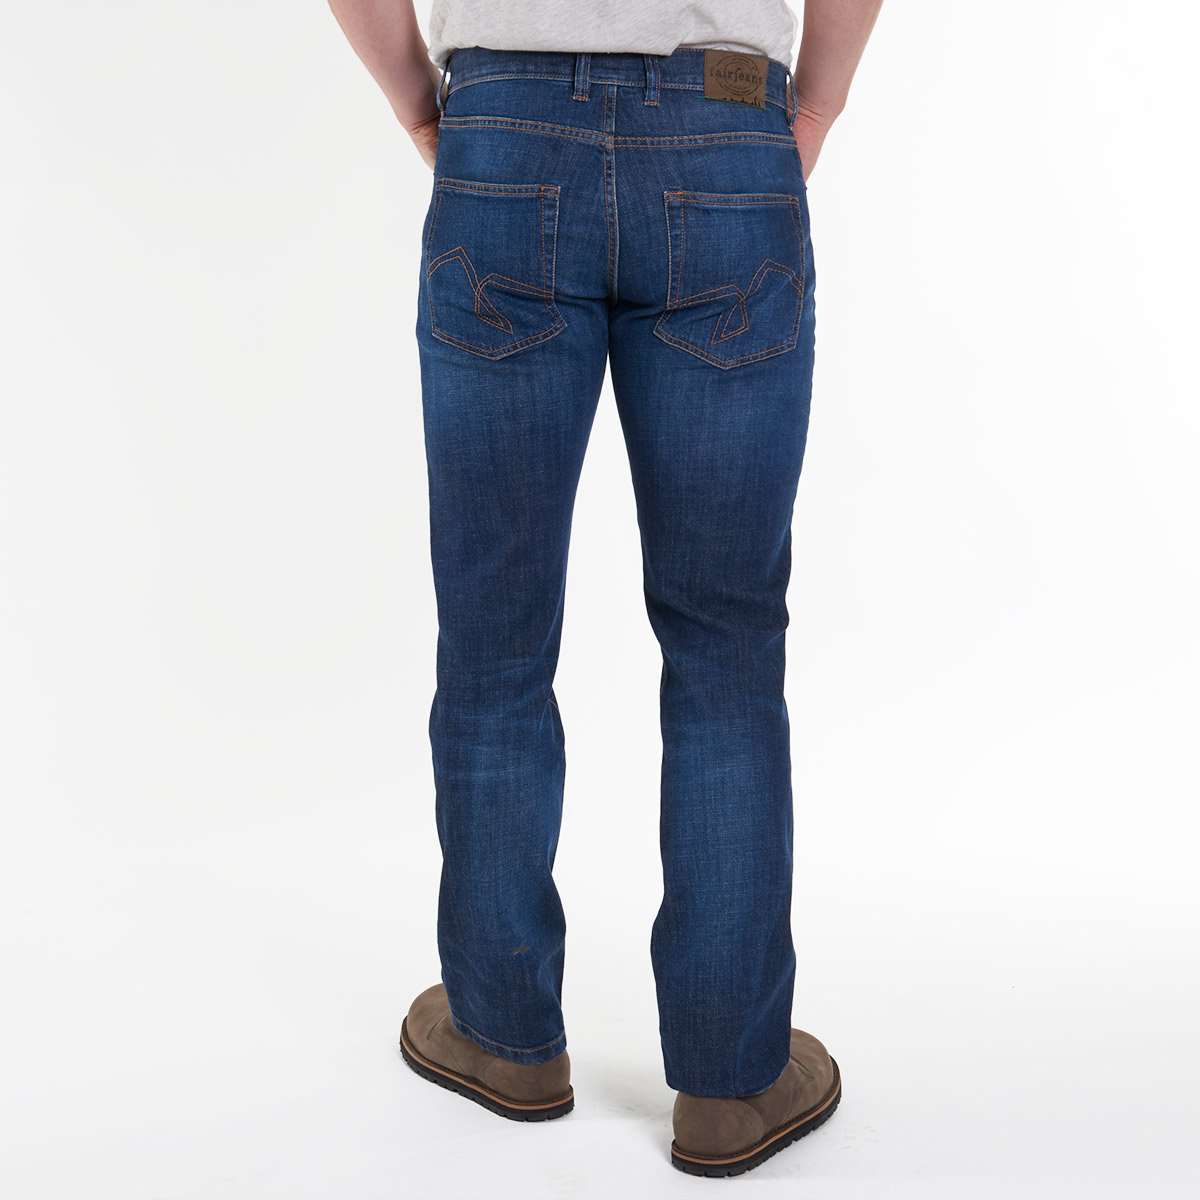  Ein Bild einer geraden Jeans für Herren von Fairjeans, einem Hersteller von nachhaltigen Jeans aus Bio-Baumwolle. Das Produktfoto zeigt eine Jeans in Regular Fit mit einem minimalistischen Design und betont die Nachhaltigkeit der Produktion.